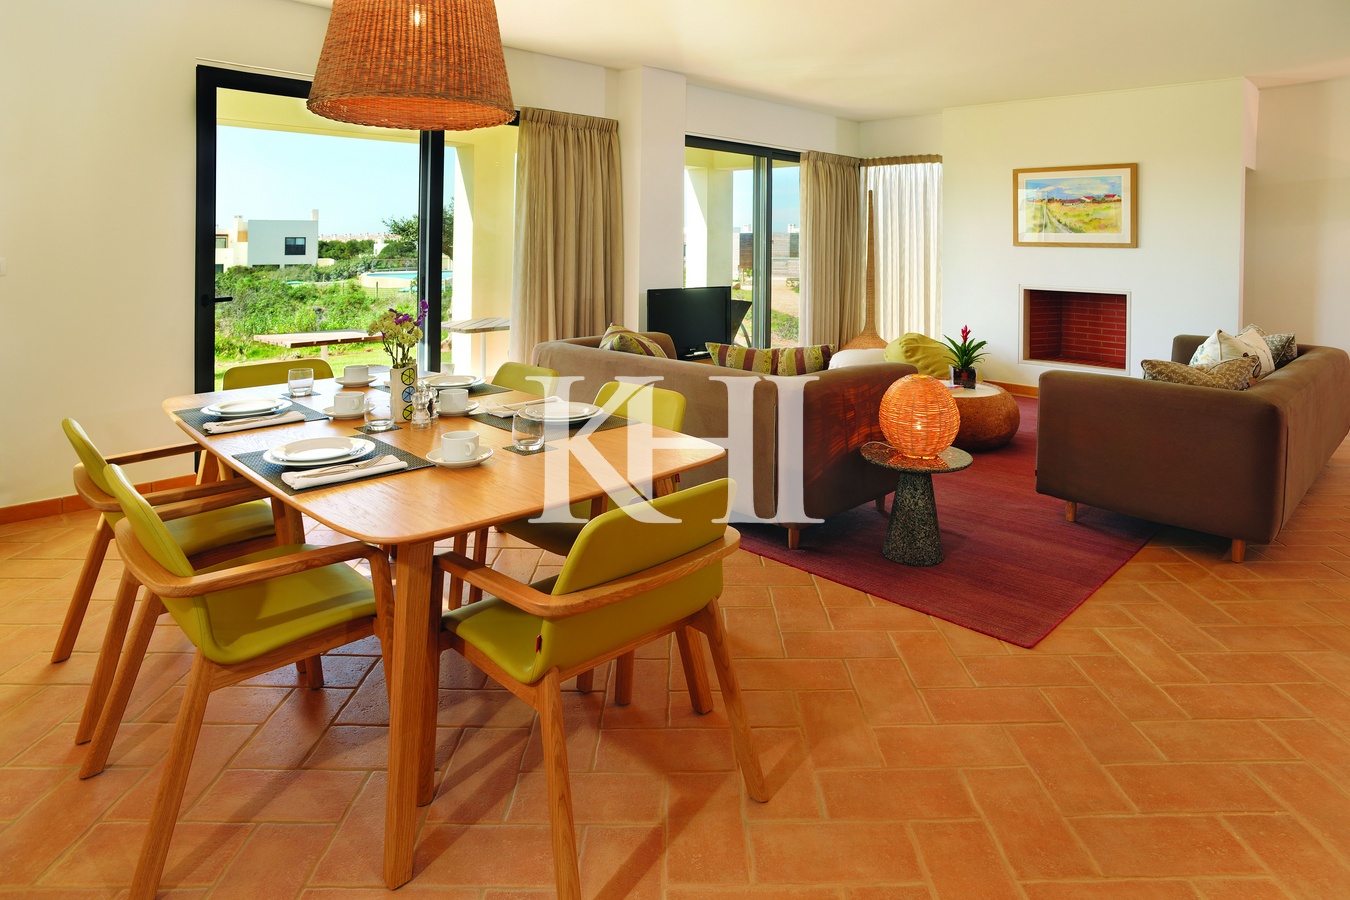 Large Villa For Sale in Algarve Slide Image 3